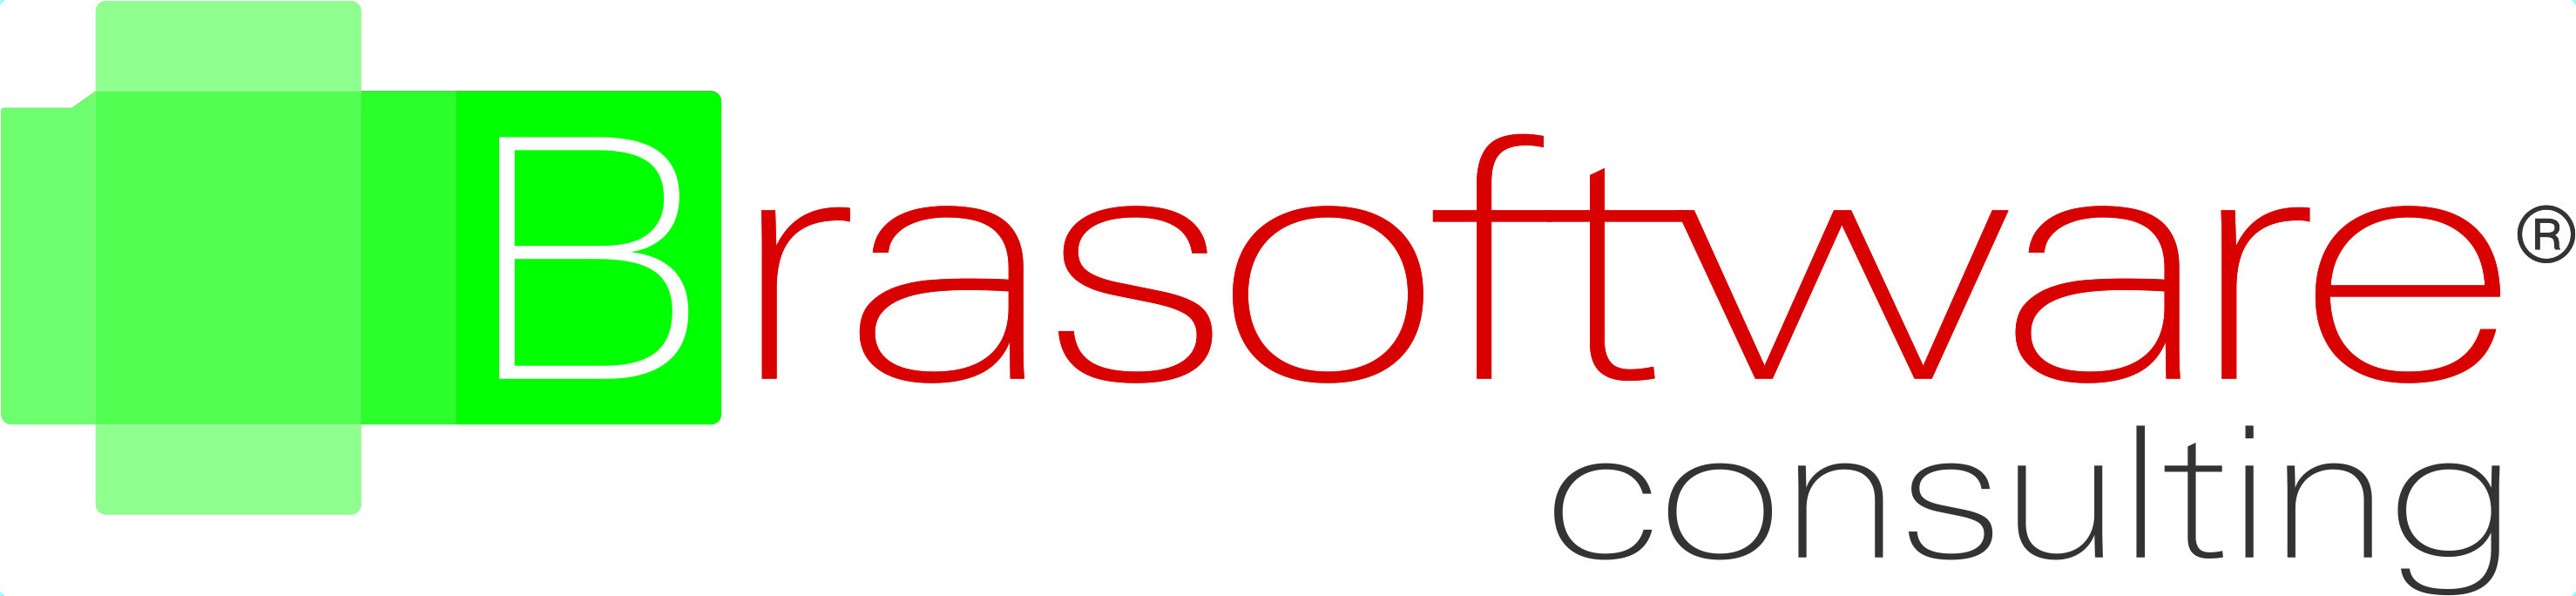 O logo do Brasoftware Consulting